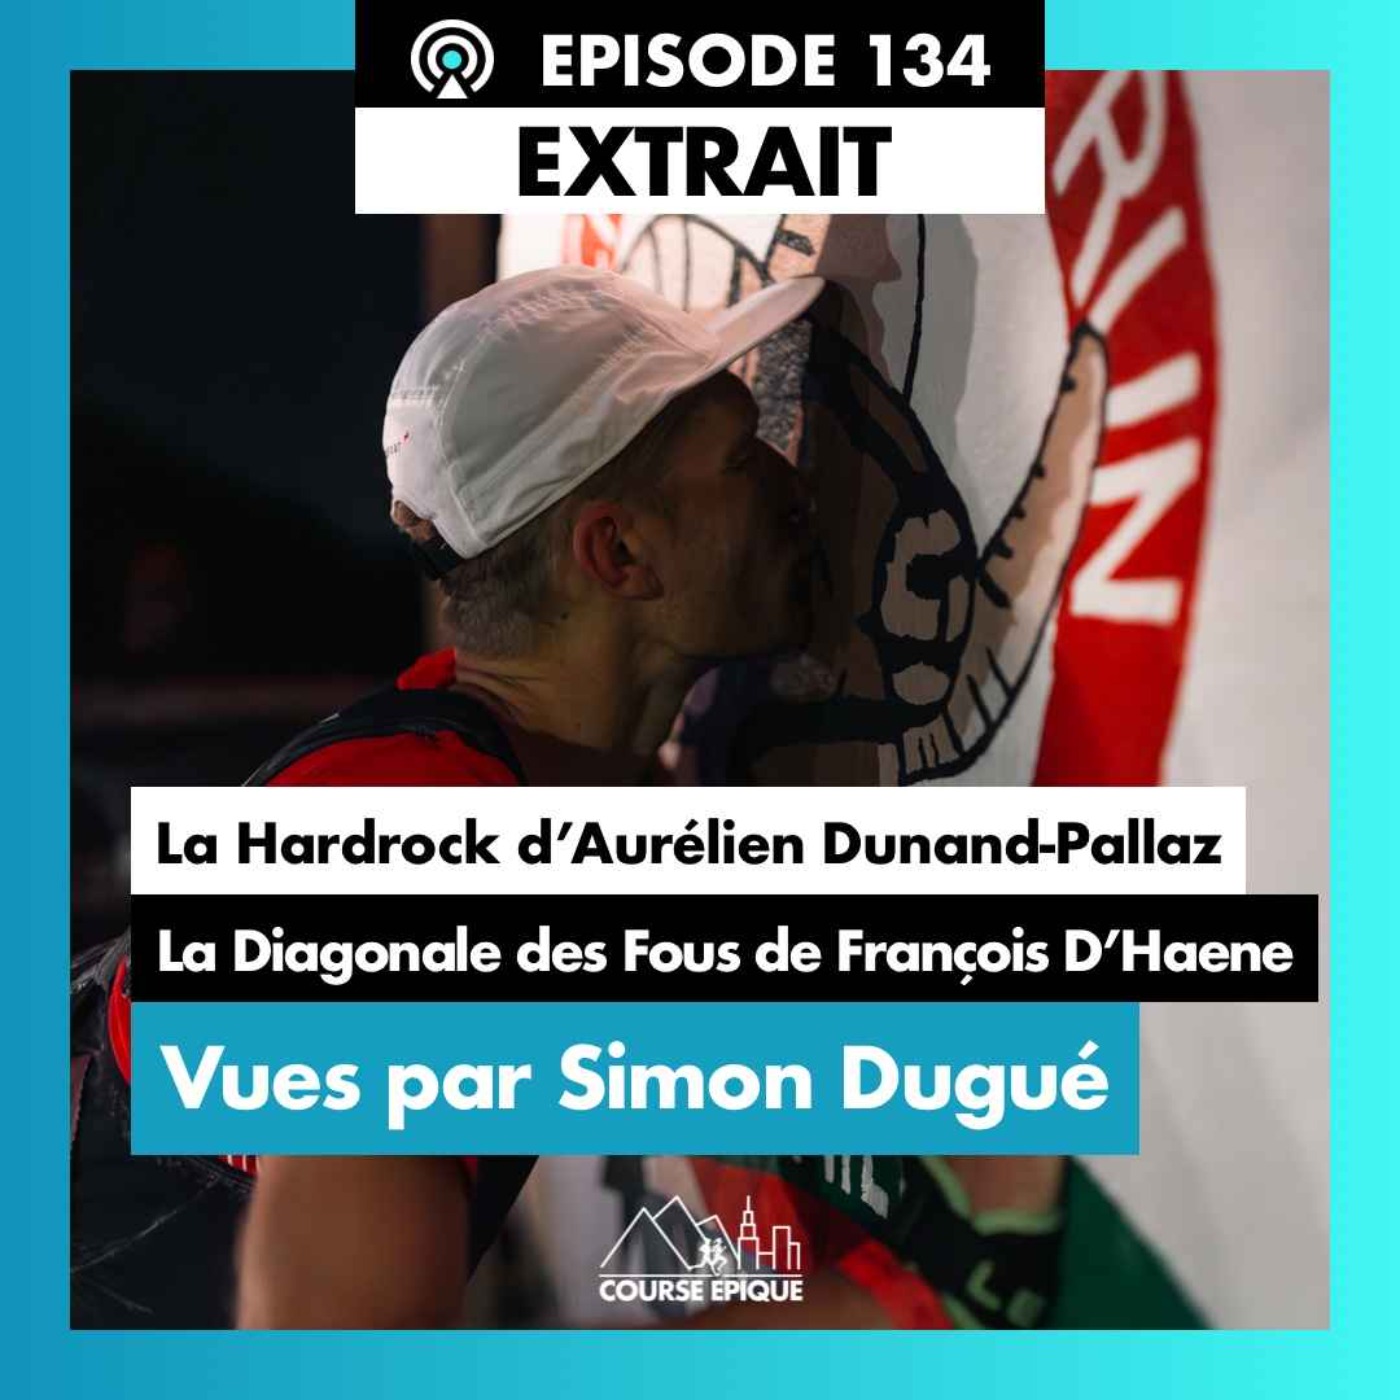 [EXTRAIT] Simon Dugué "La Hardock d'Aurélien Dunand-Pallaz et la Diagonale des Fous de François D'Haene, vues de l'intérieur"